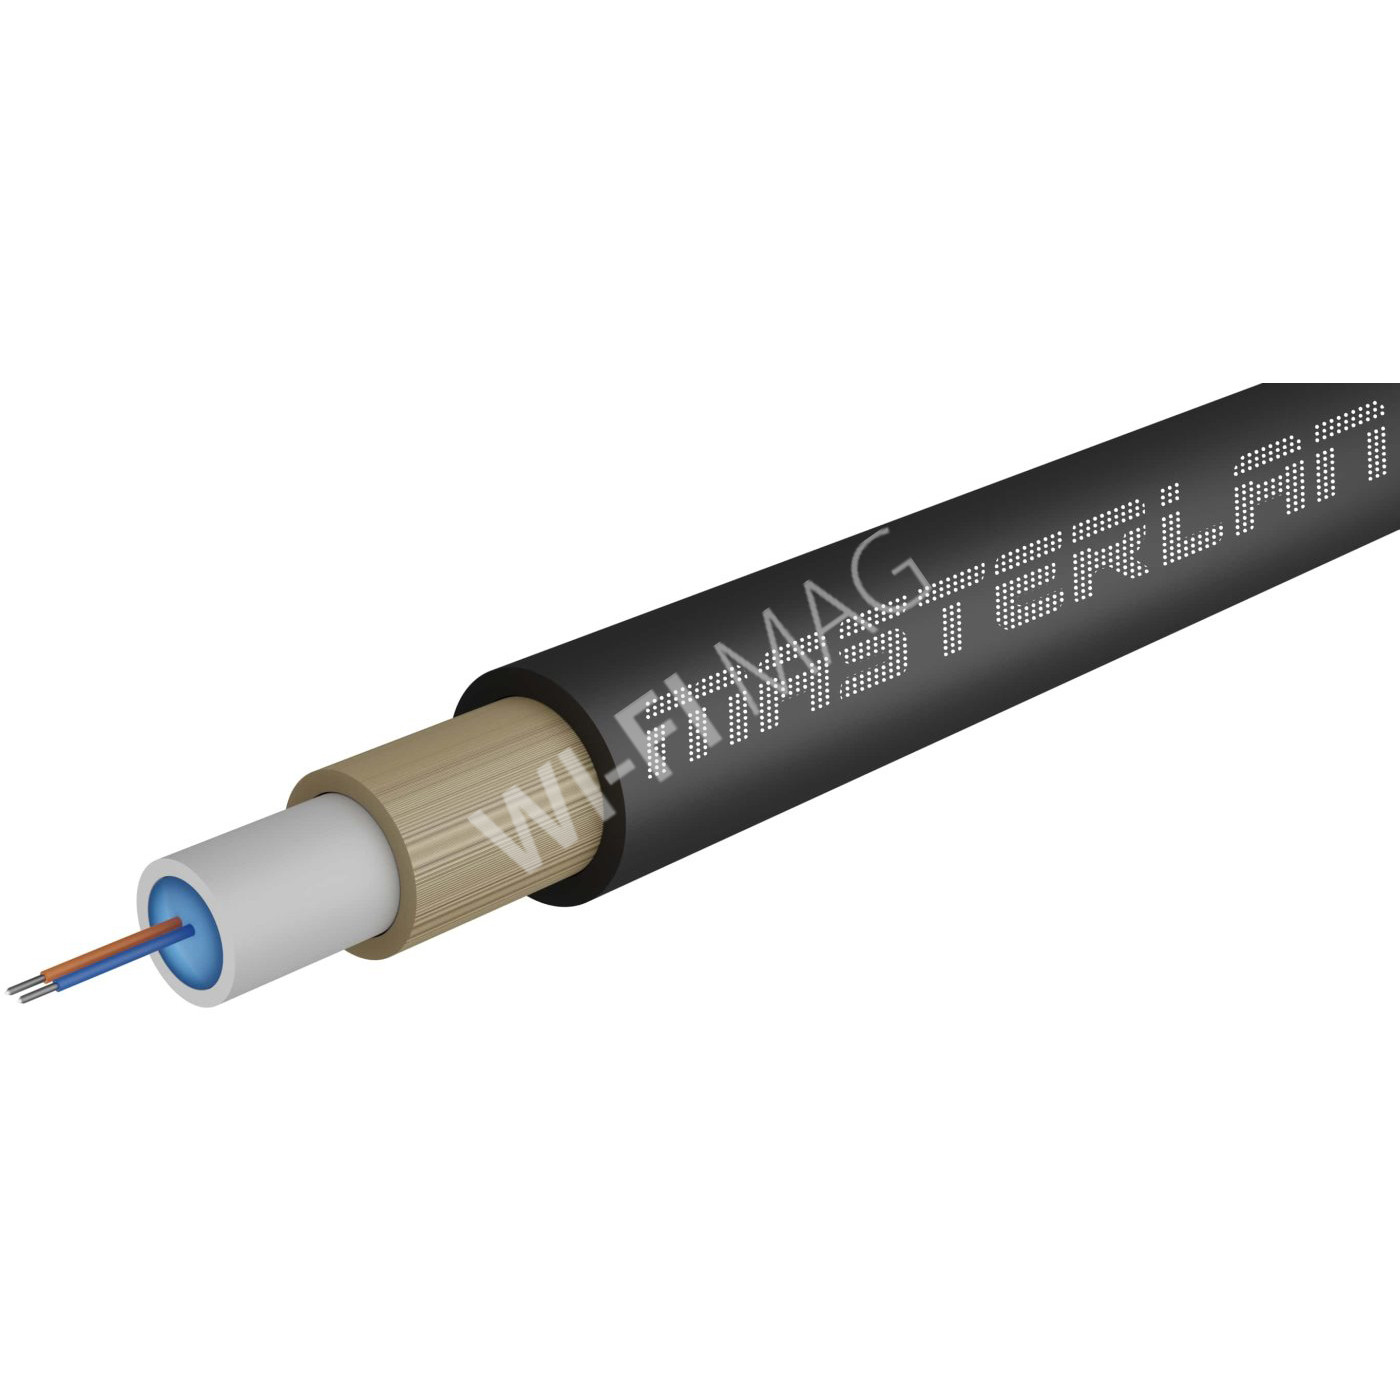 Masterlan Air1 fiber optic cable - 2vl 9/125, air-blowen, SM, HDPE, G657A1, 1m, одномодовый оптический кабель, чёрный